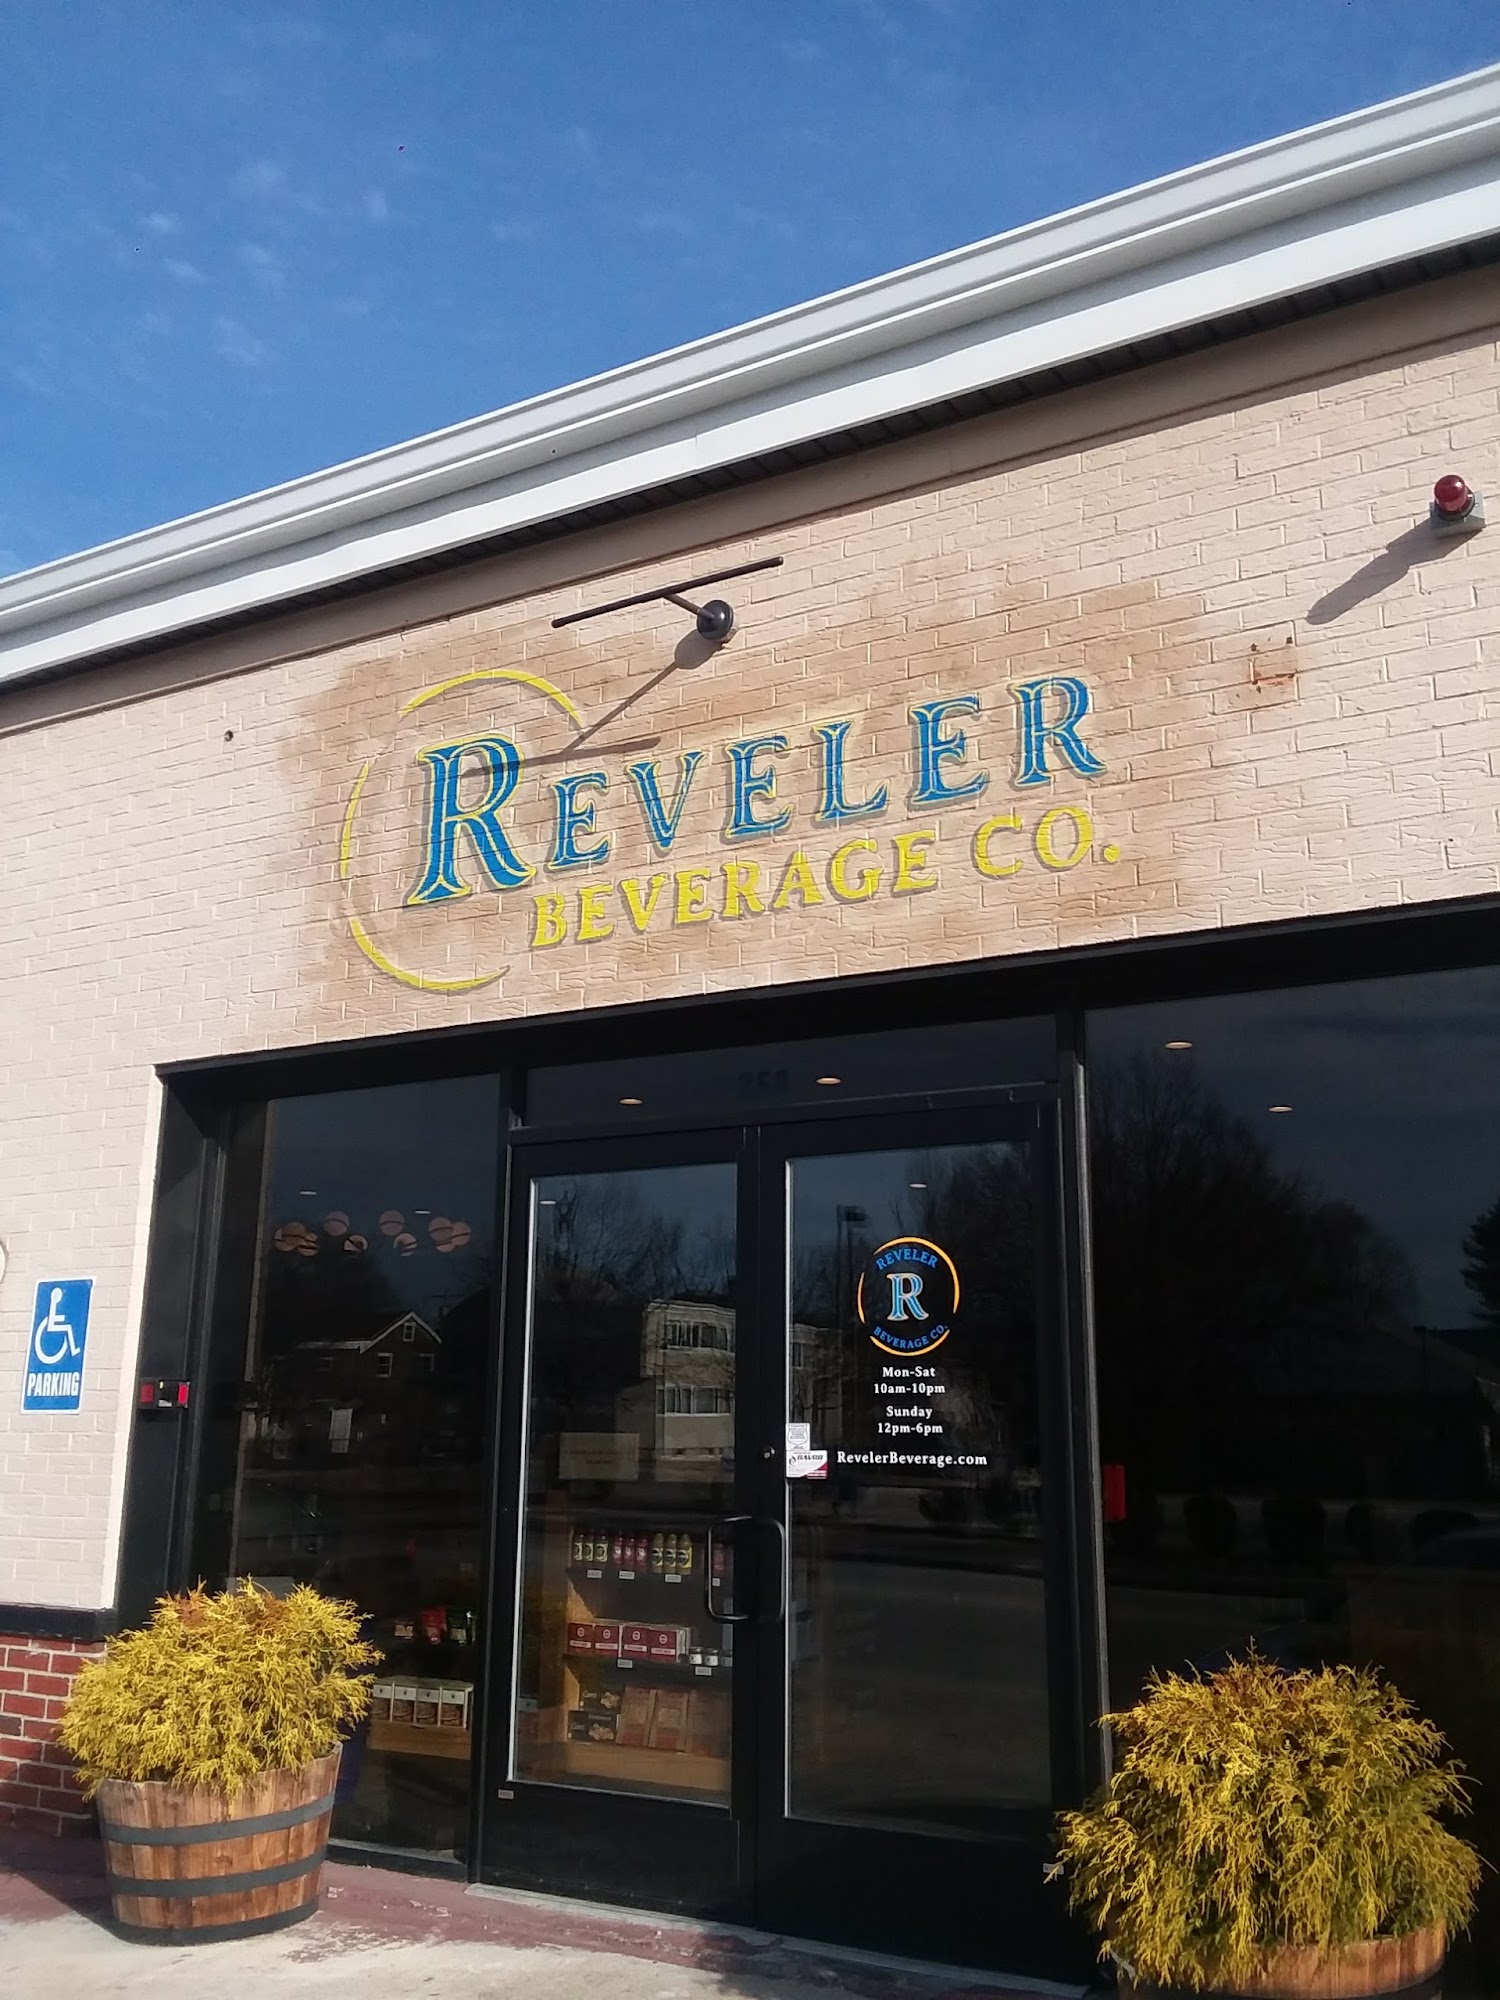 Reveler Beverage Co.